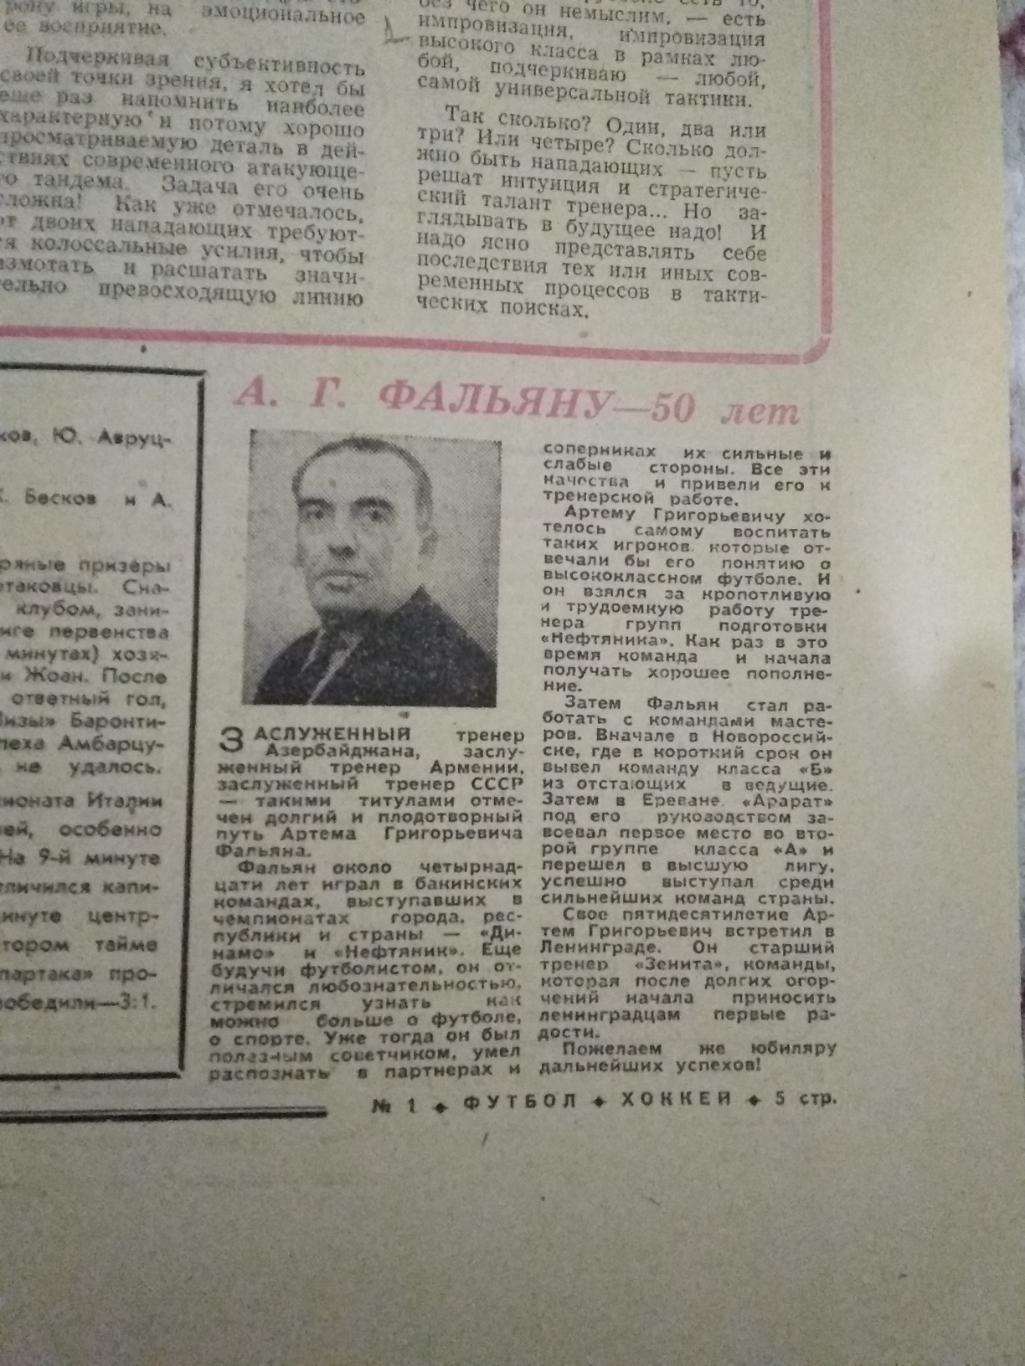 Статья.Футбол.А.Г.Фальян - 50 лет.1968 г.